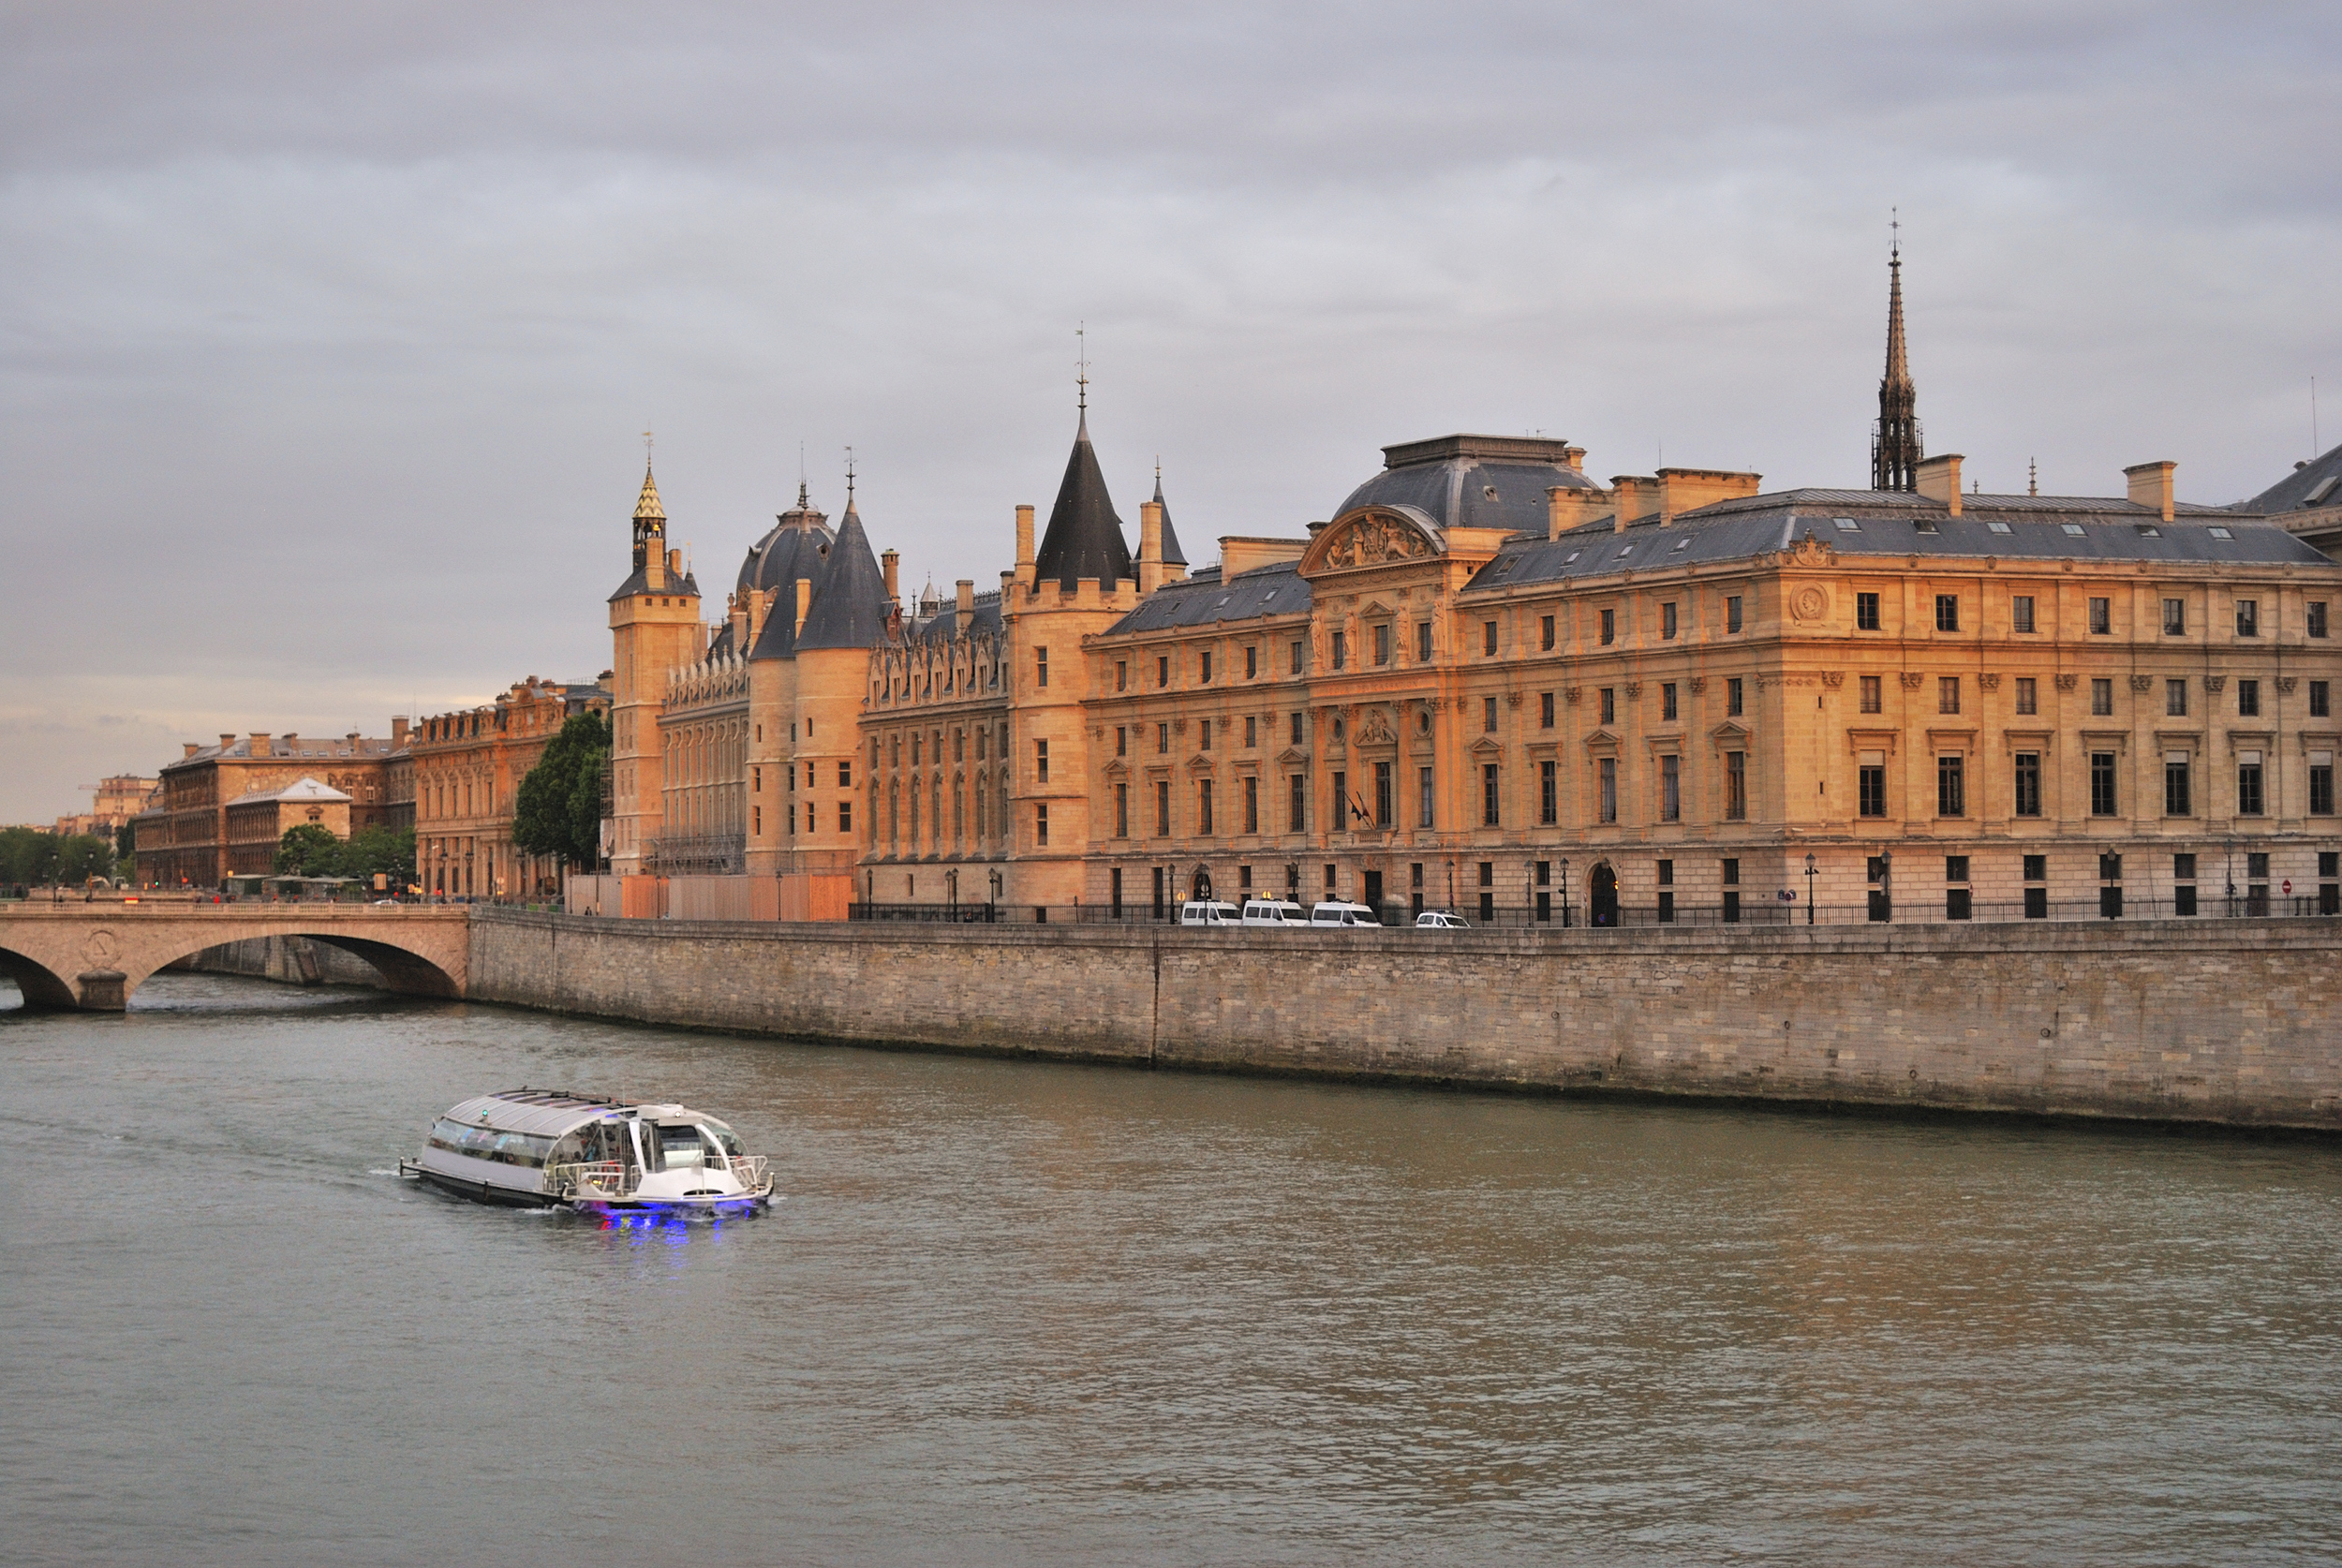 แม่น้ำแซน (Seine River หรือ La Seine à Paris) กรุงปารีส ประเทศฝรั่งเศส